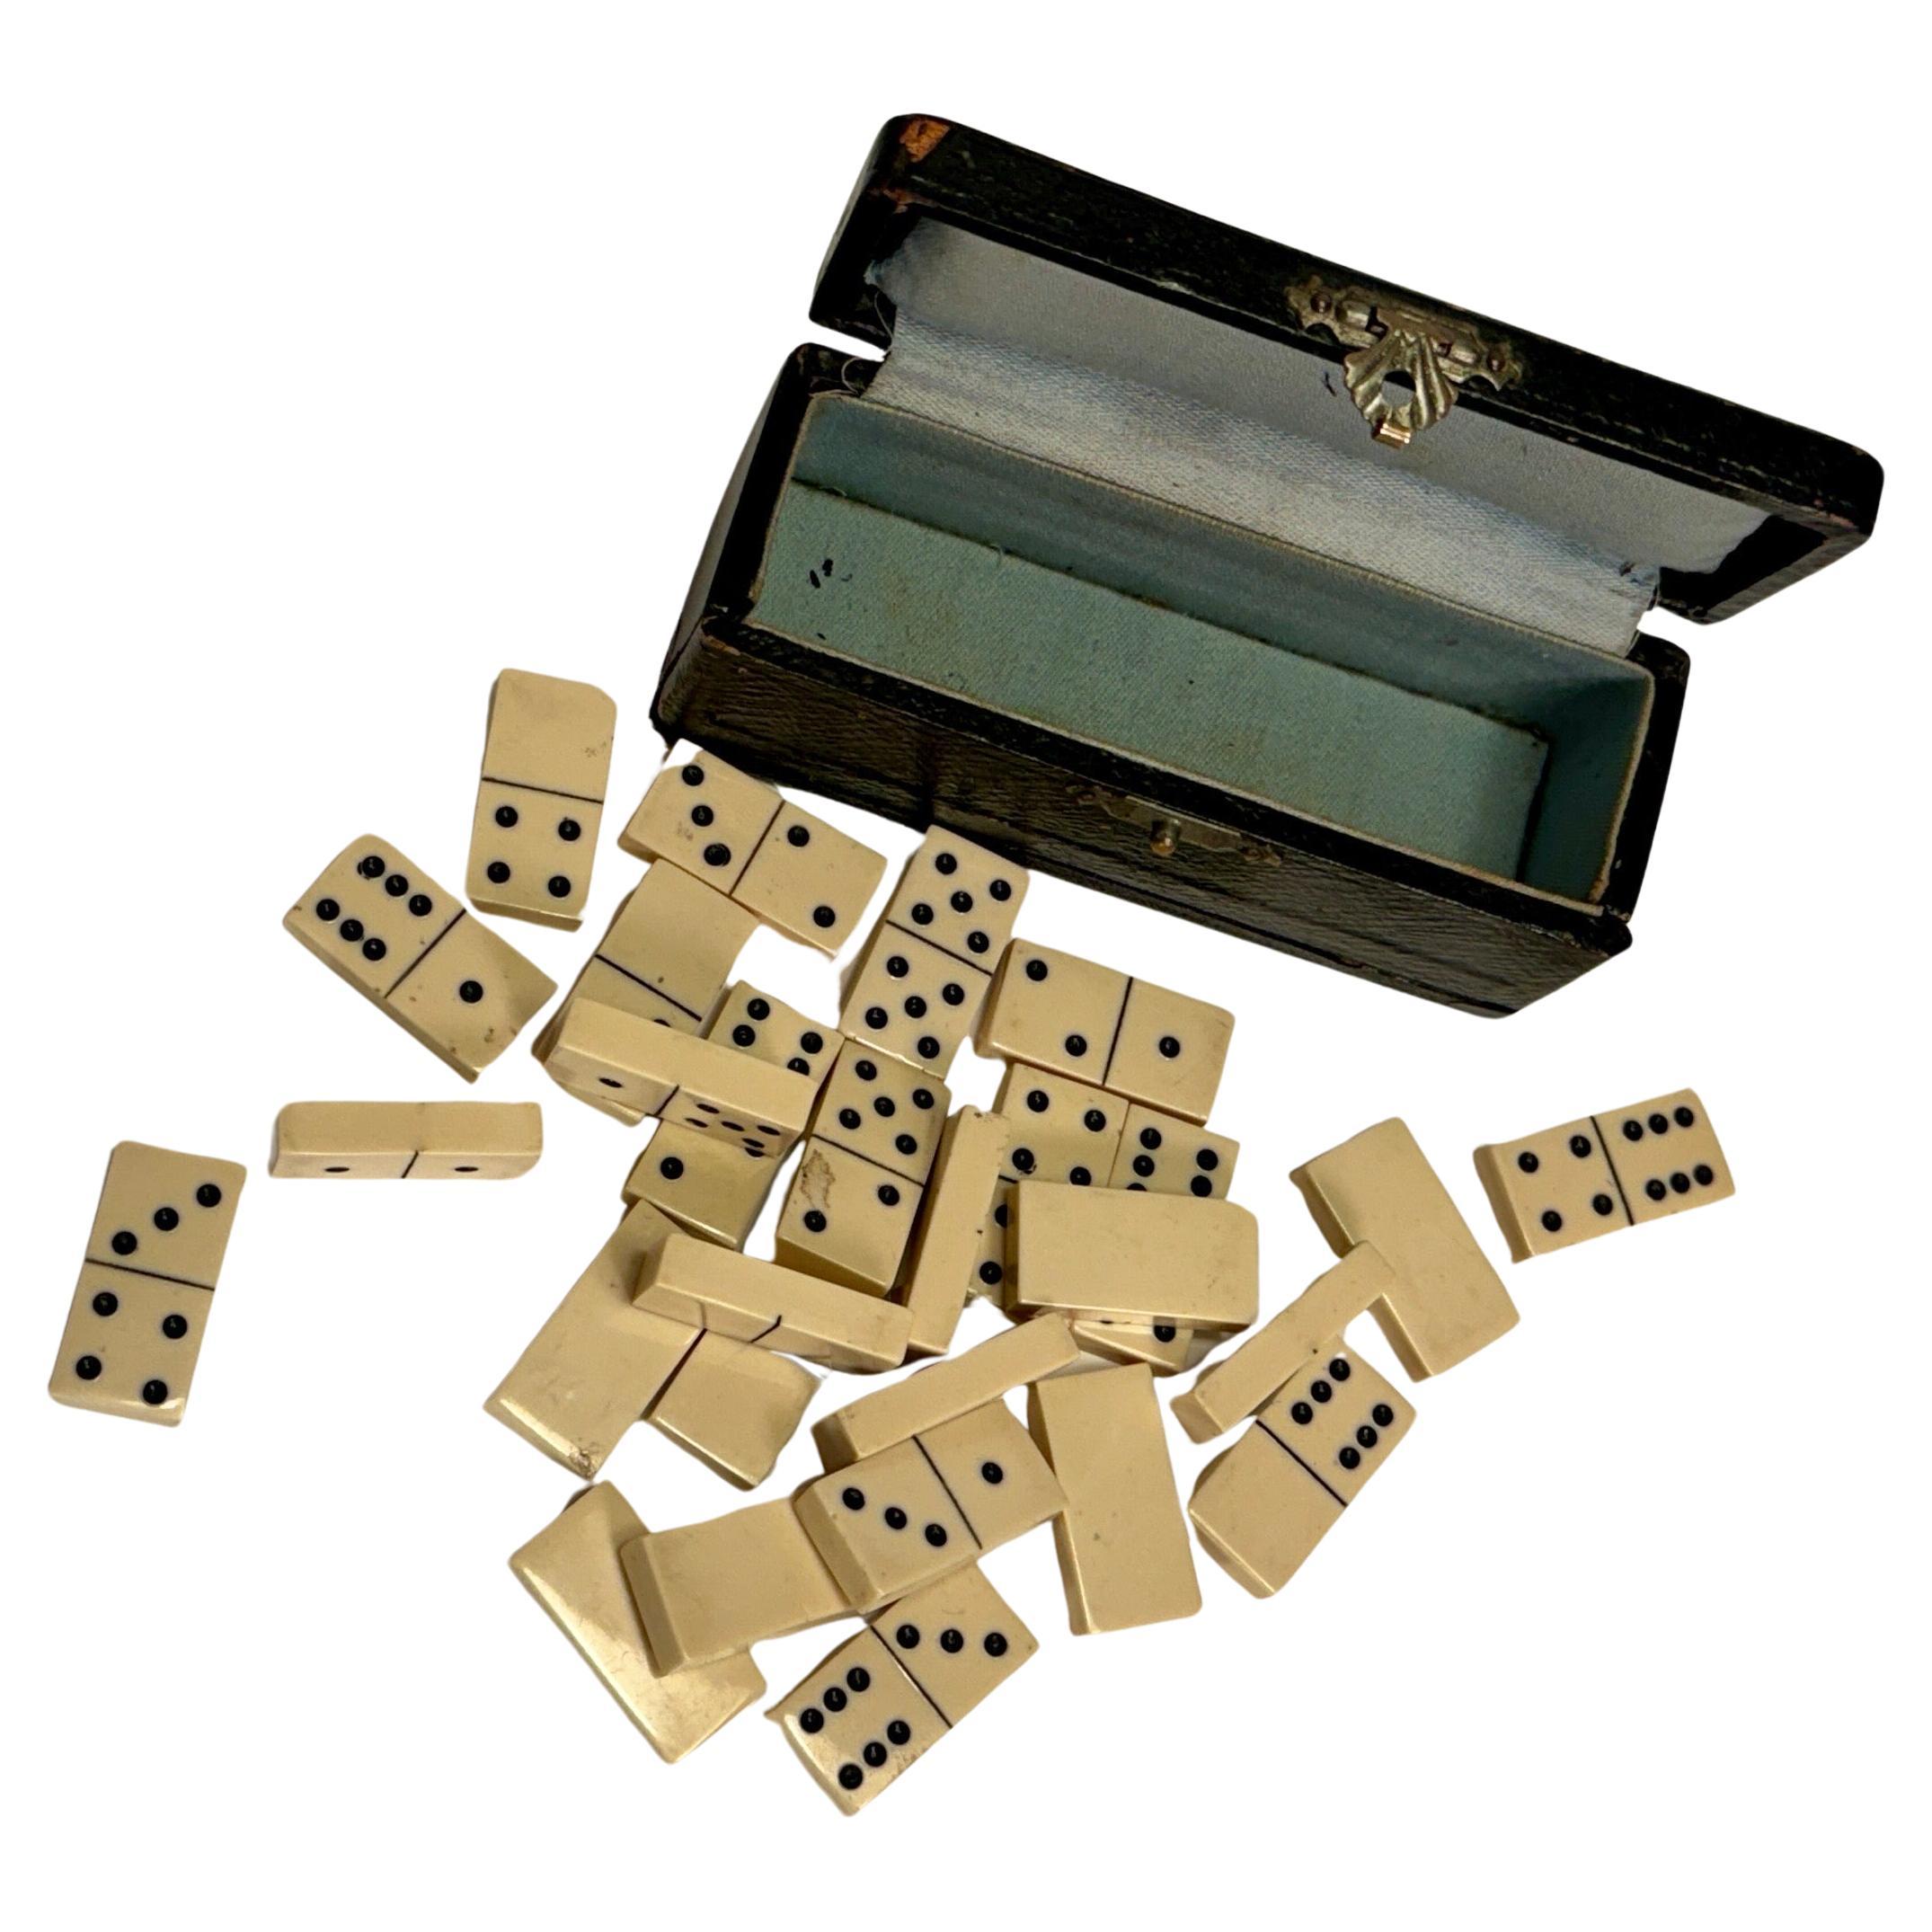 Petit jeu de société Dominos de 28 pièces, format voyage, dans une petite boîte en cuir noir.
Chaque pièce mesure 1,1 x 0,6 x 0,2 pouces.